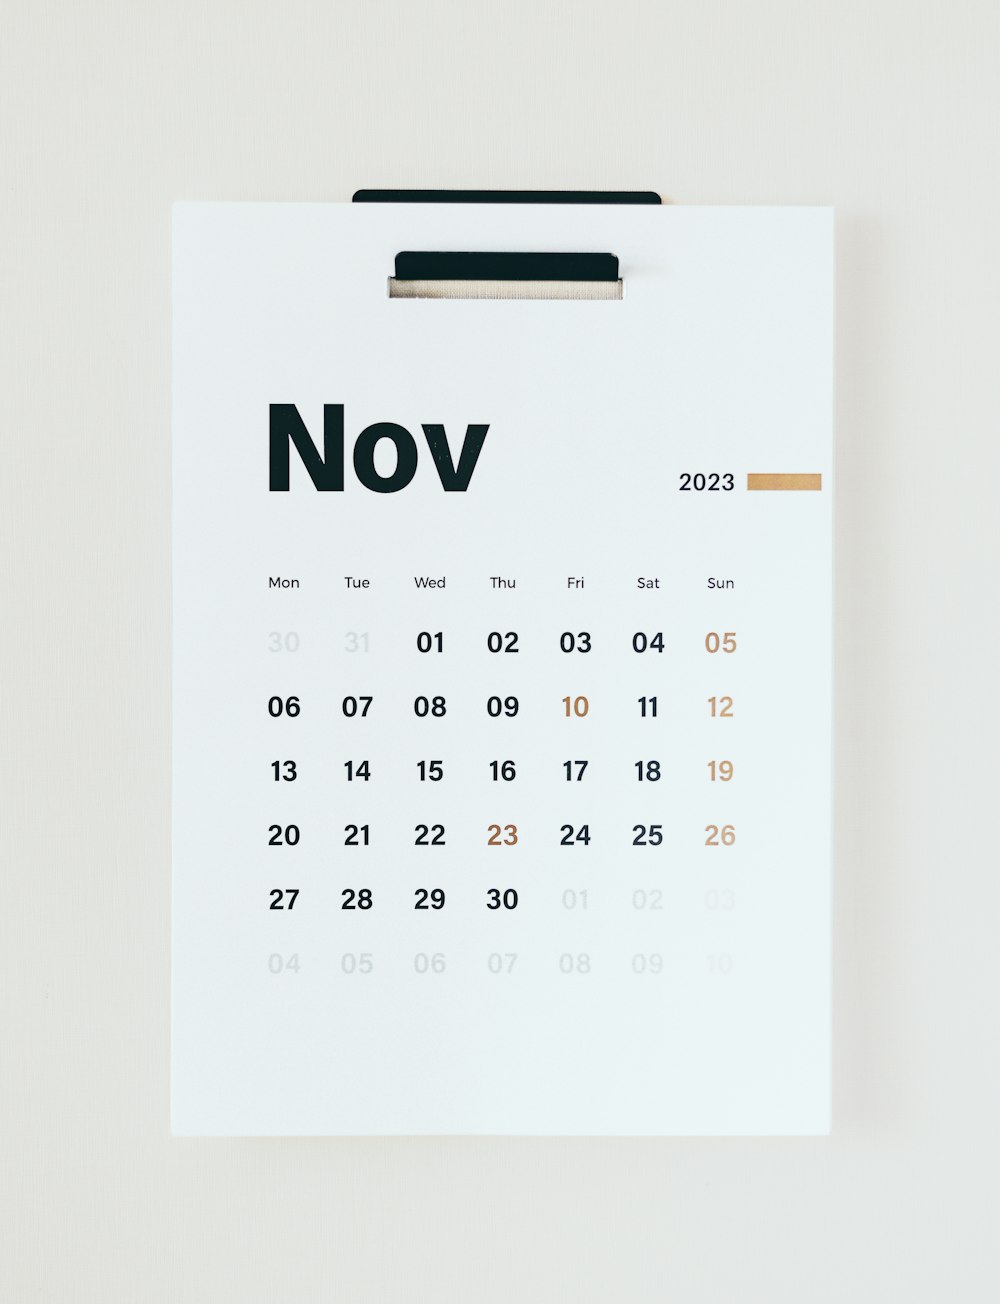 「11月」と書かれたカレンダー